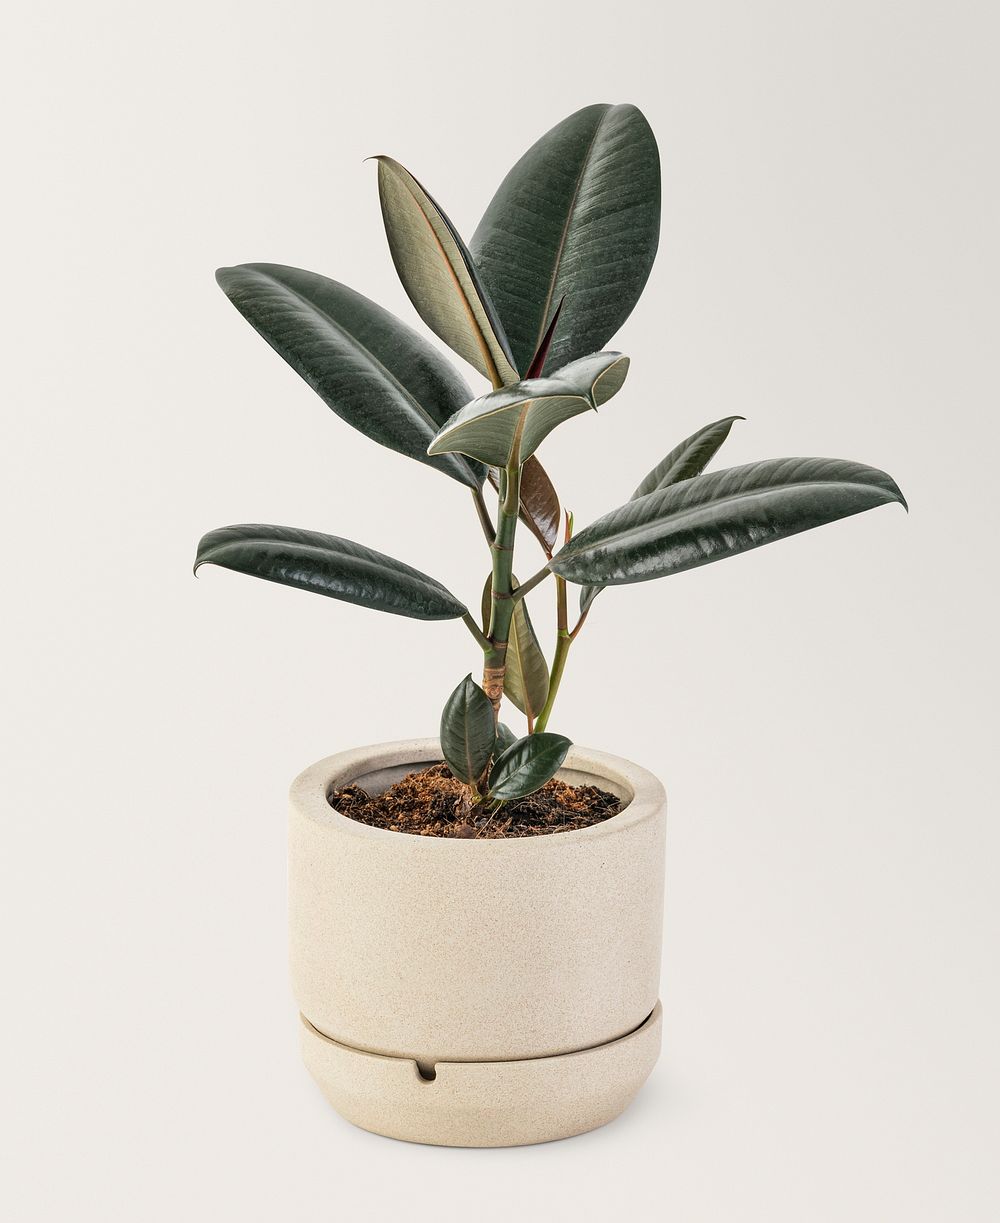 Rubber plant in a ceramic pot